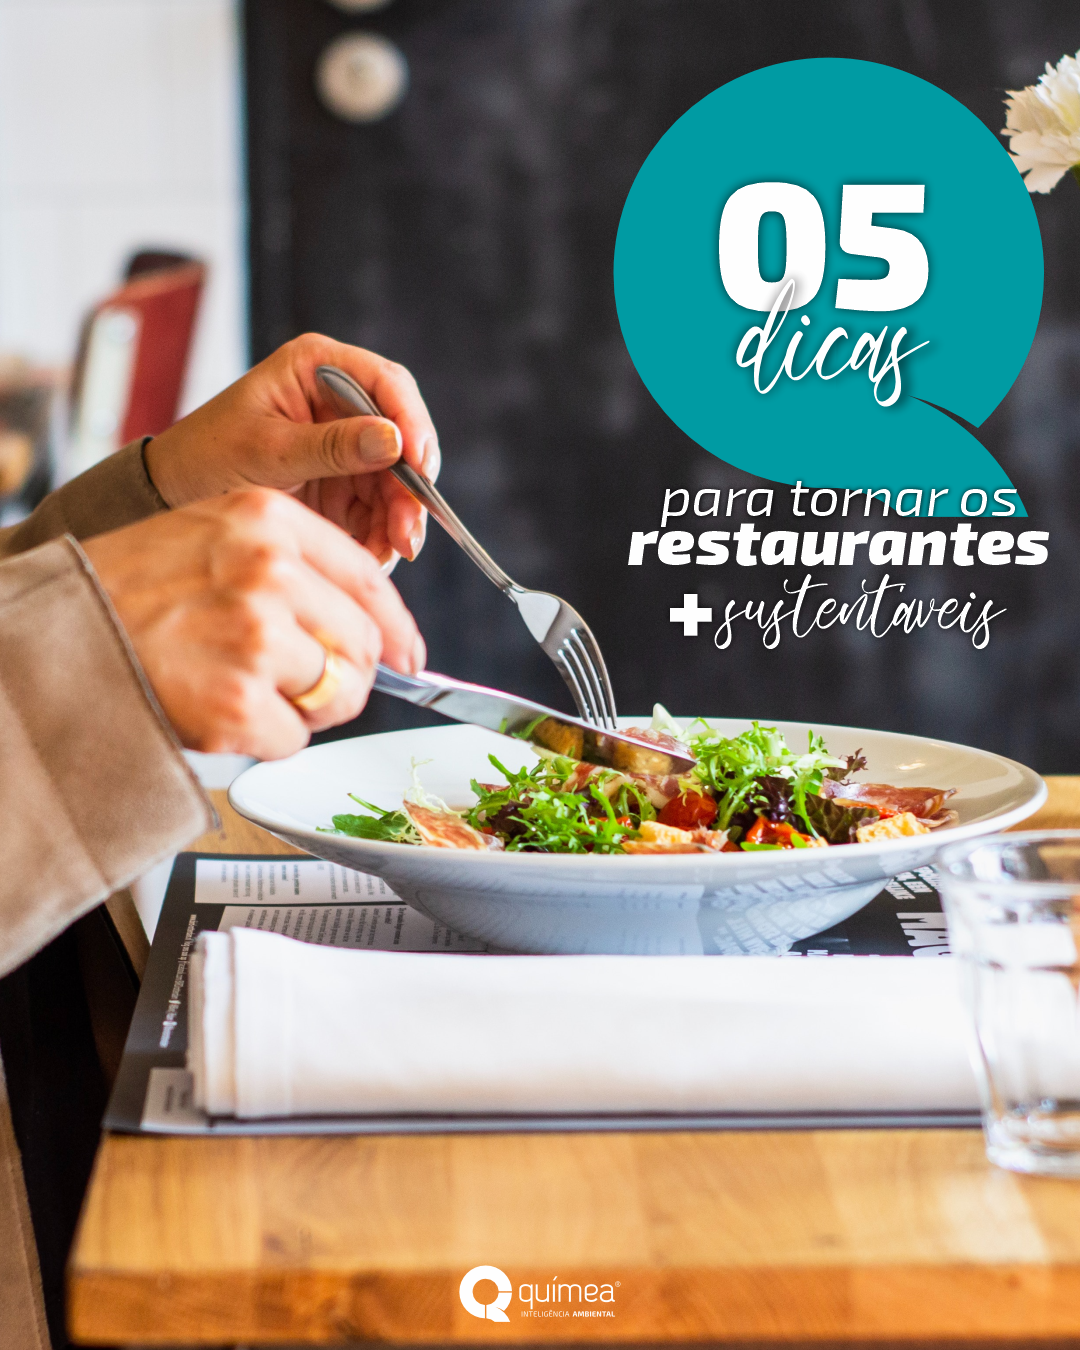 05 dicas para tornar os restaurantes mais sustentáveis